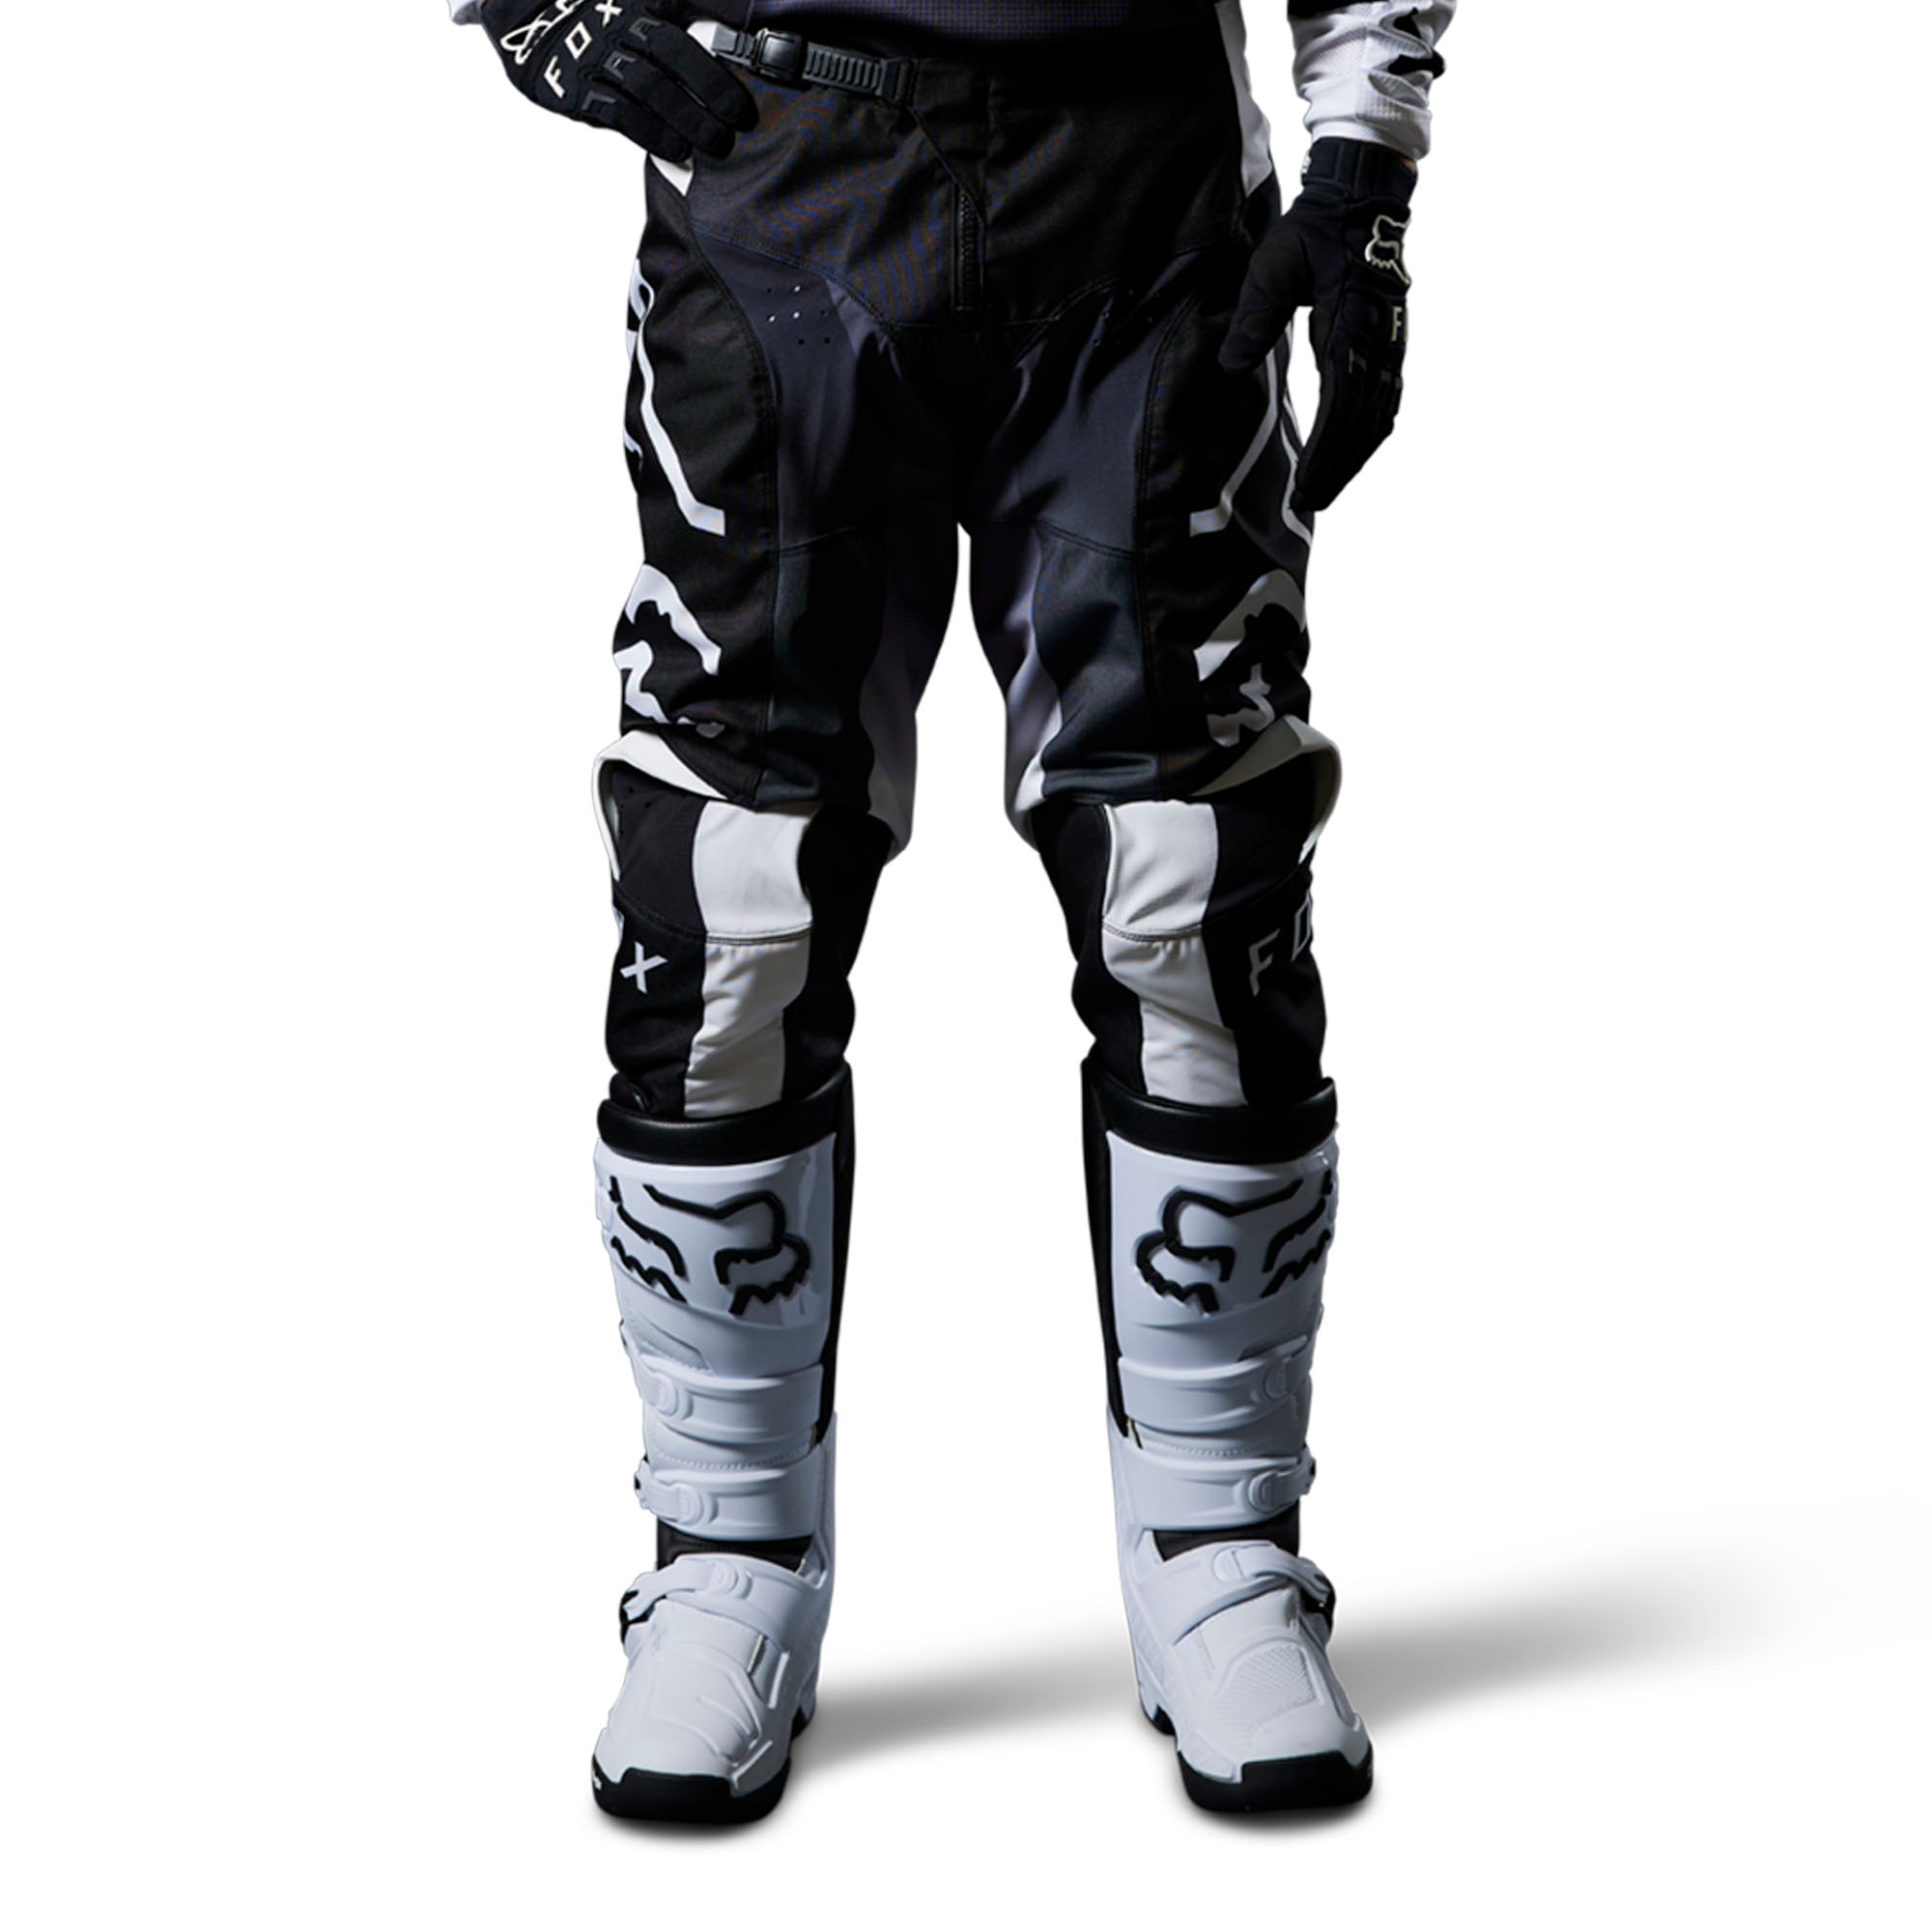 Fox Racing 180 Leed Motocross Pants